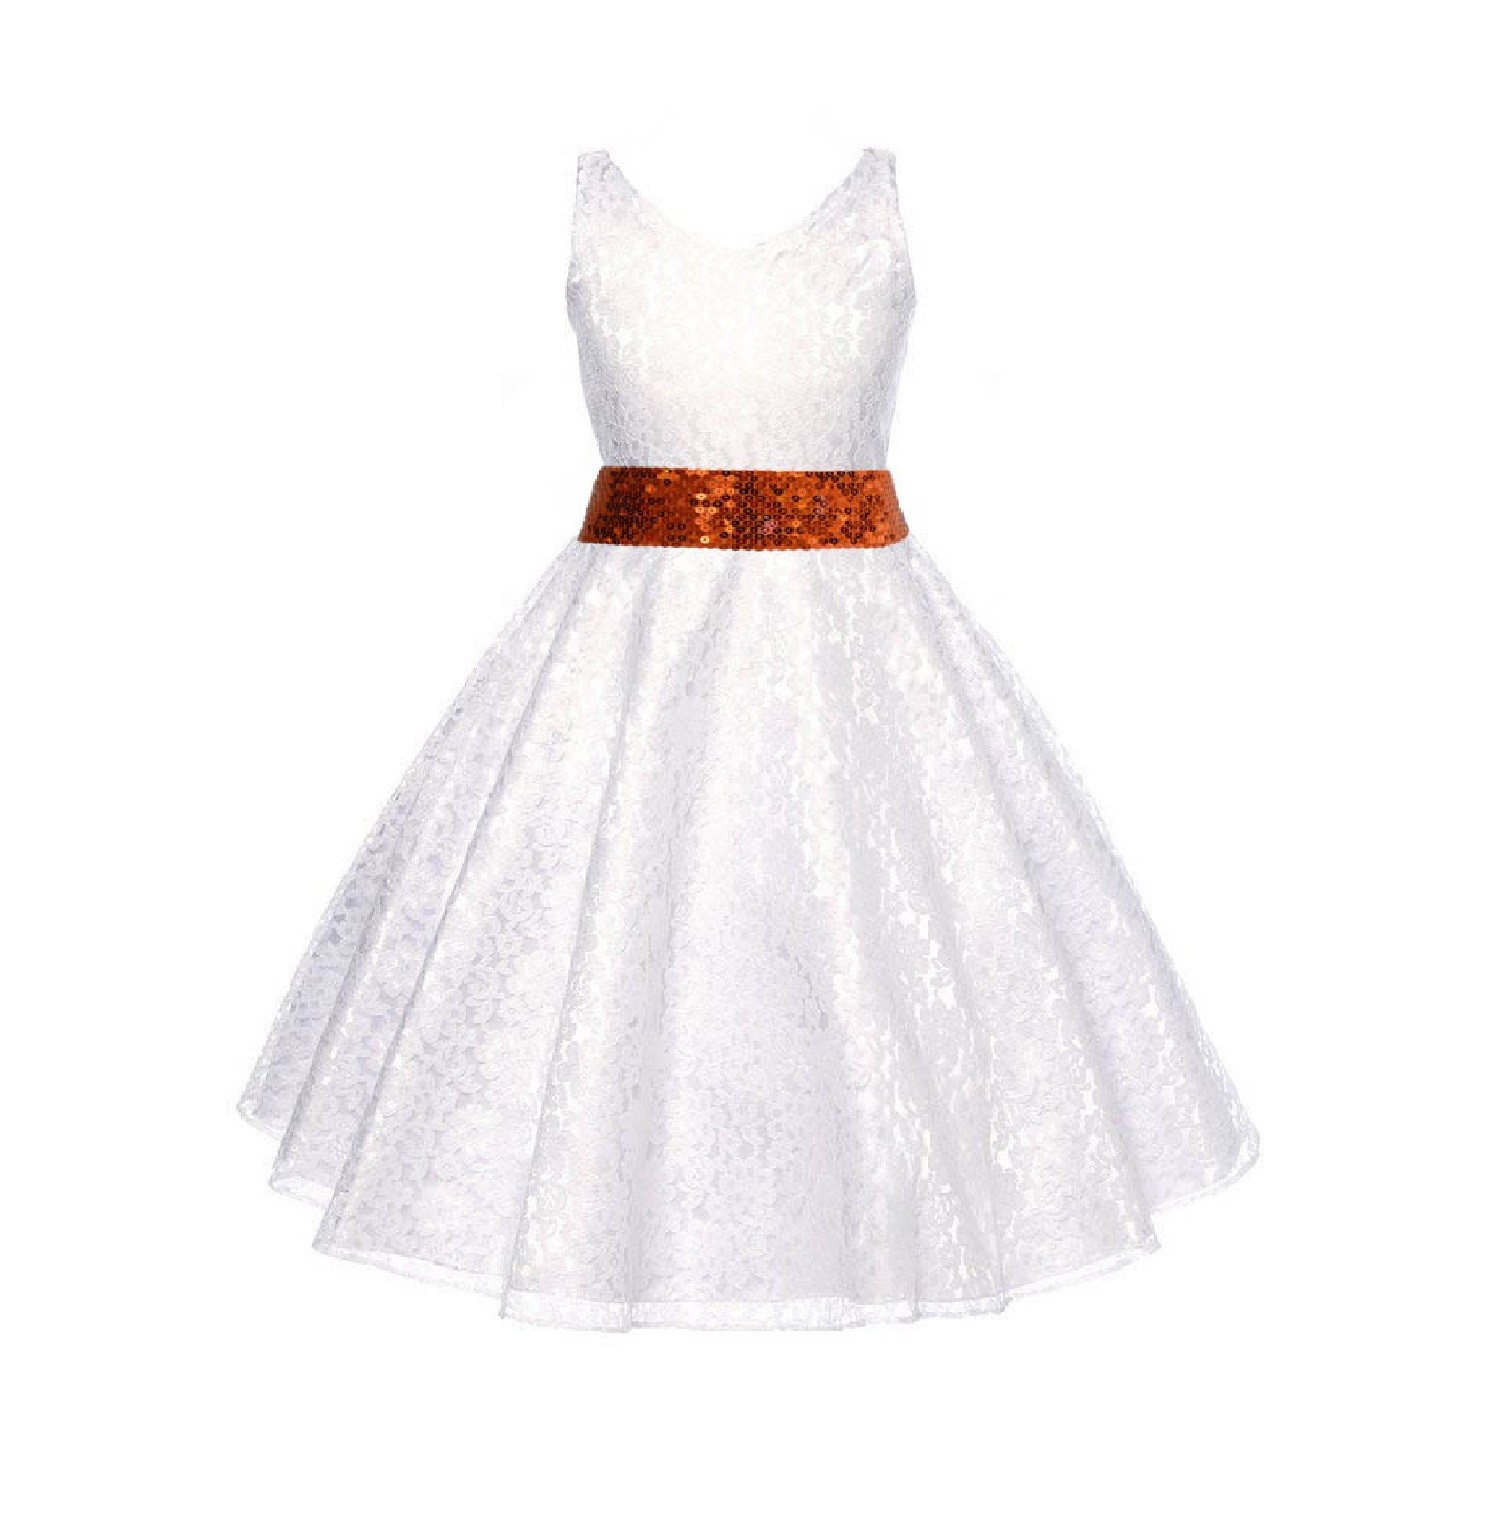 White Floral Lace Overlay V-Neck Orange Sequin Flower Girl Dress 166mh